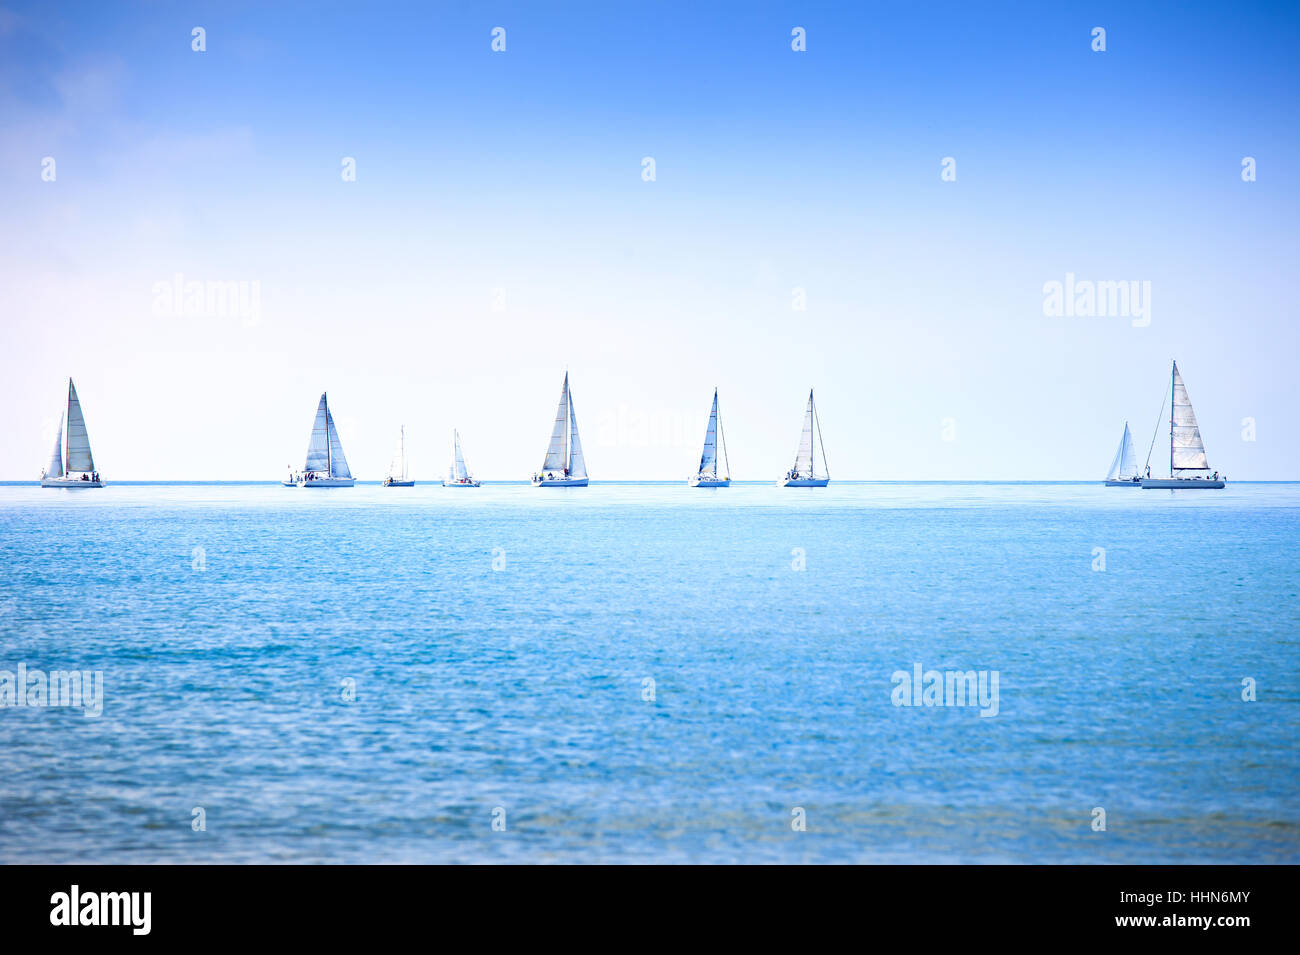 Segelboot Yacht oder Segelboot Gruppe Regatta-Rennen auf dem Meer oder Ozean Wasser. Panorama-Blick. Stockfoto